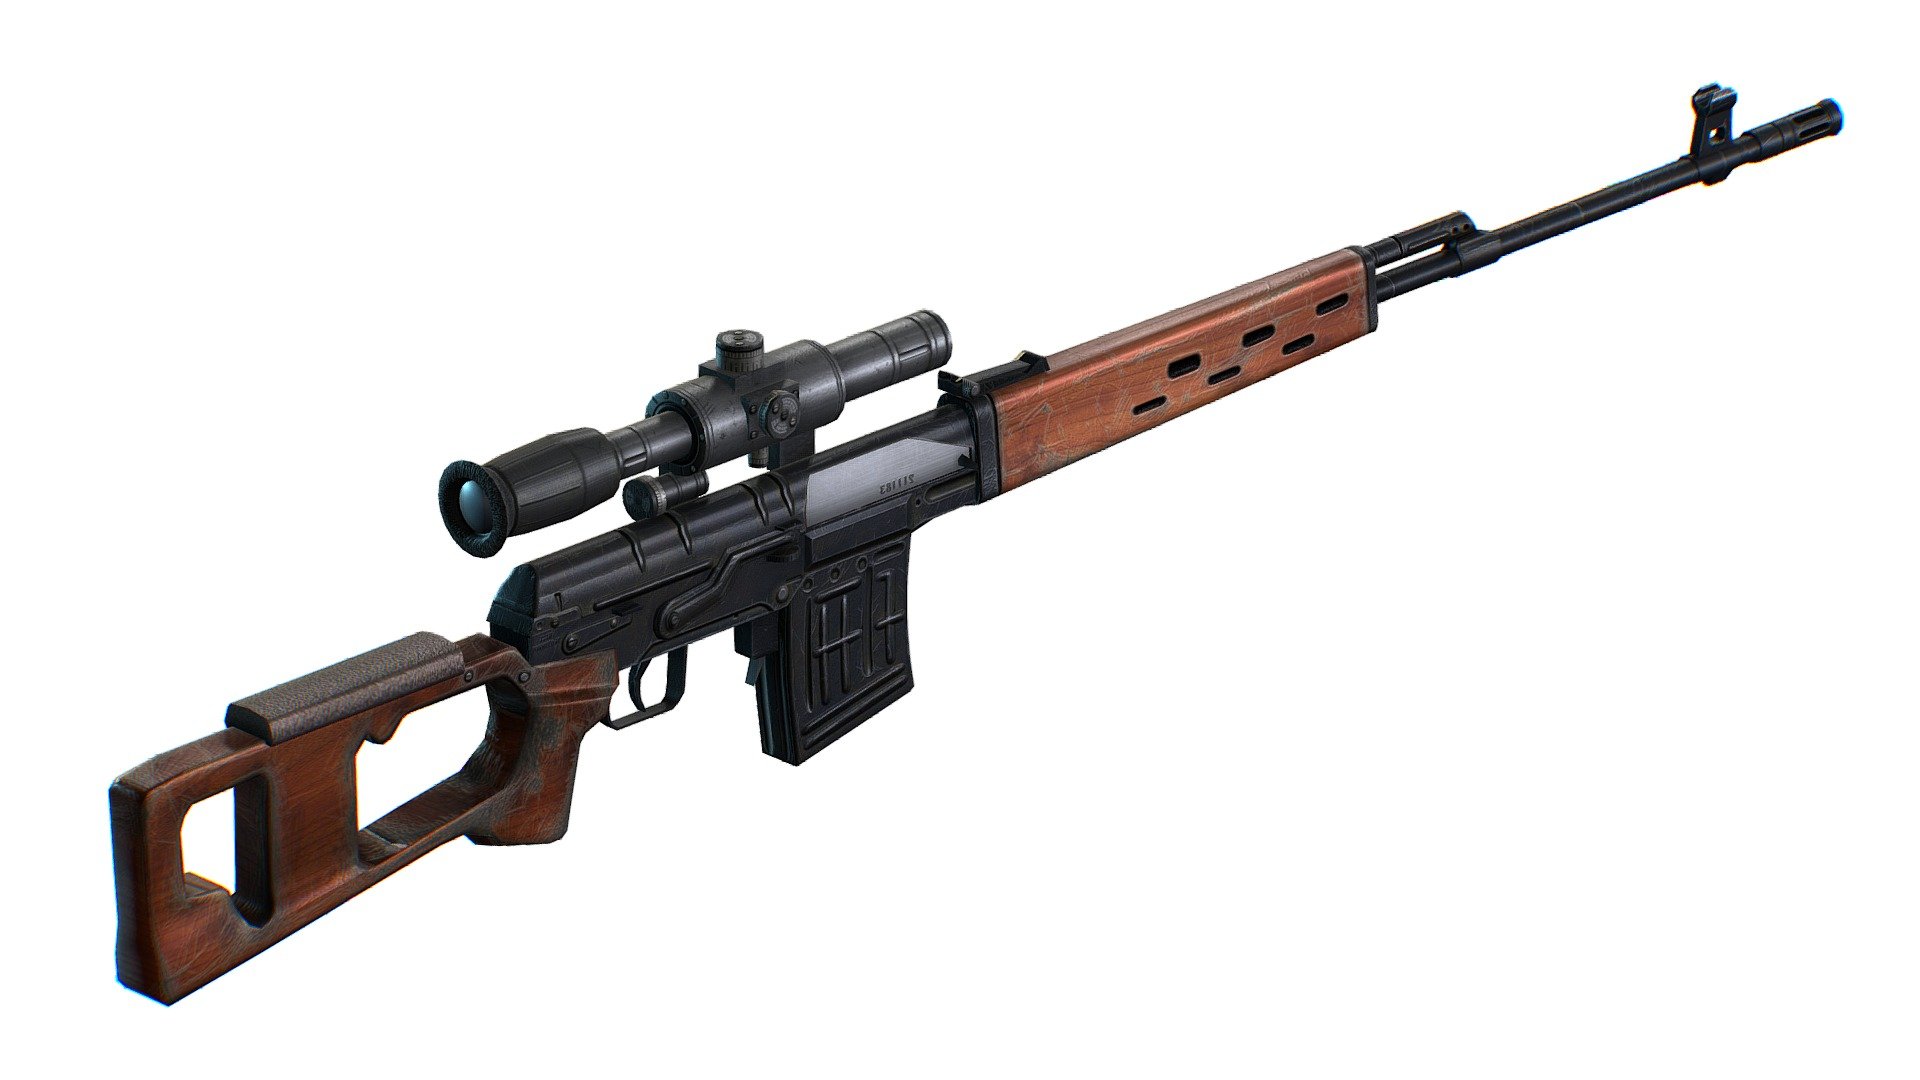 SVD sniper rifle stock photo. Image of metal, dragunov - 112436528